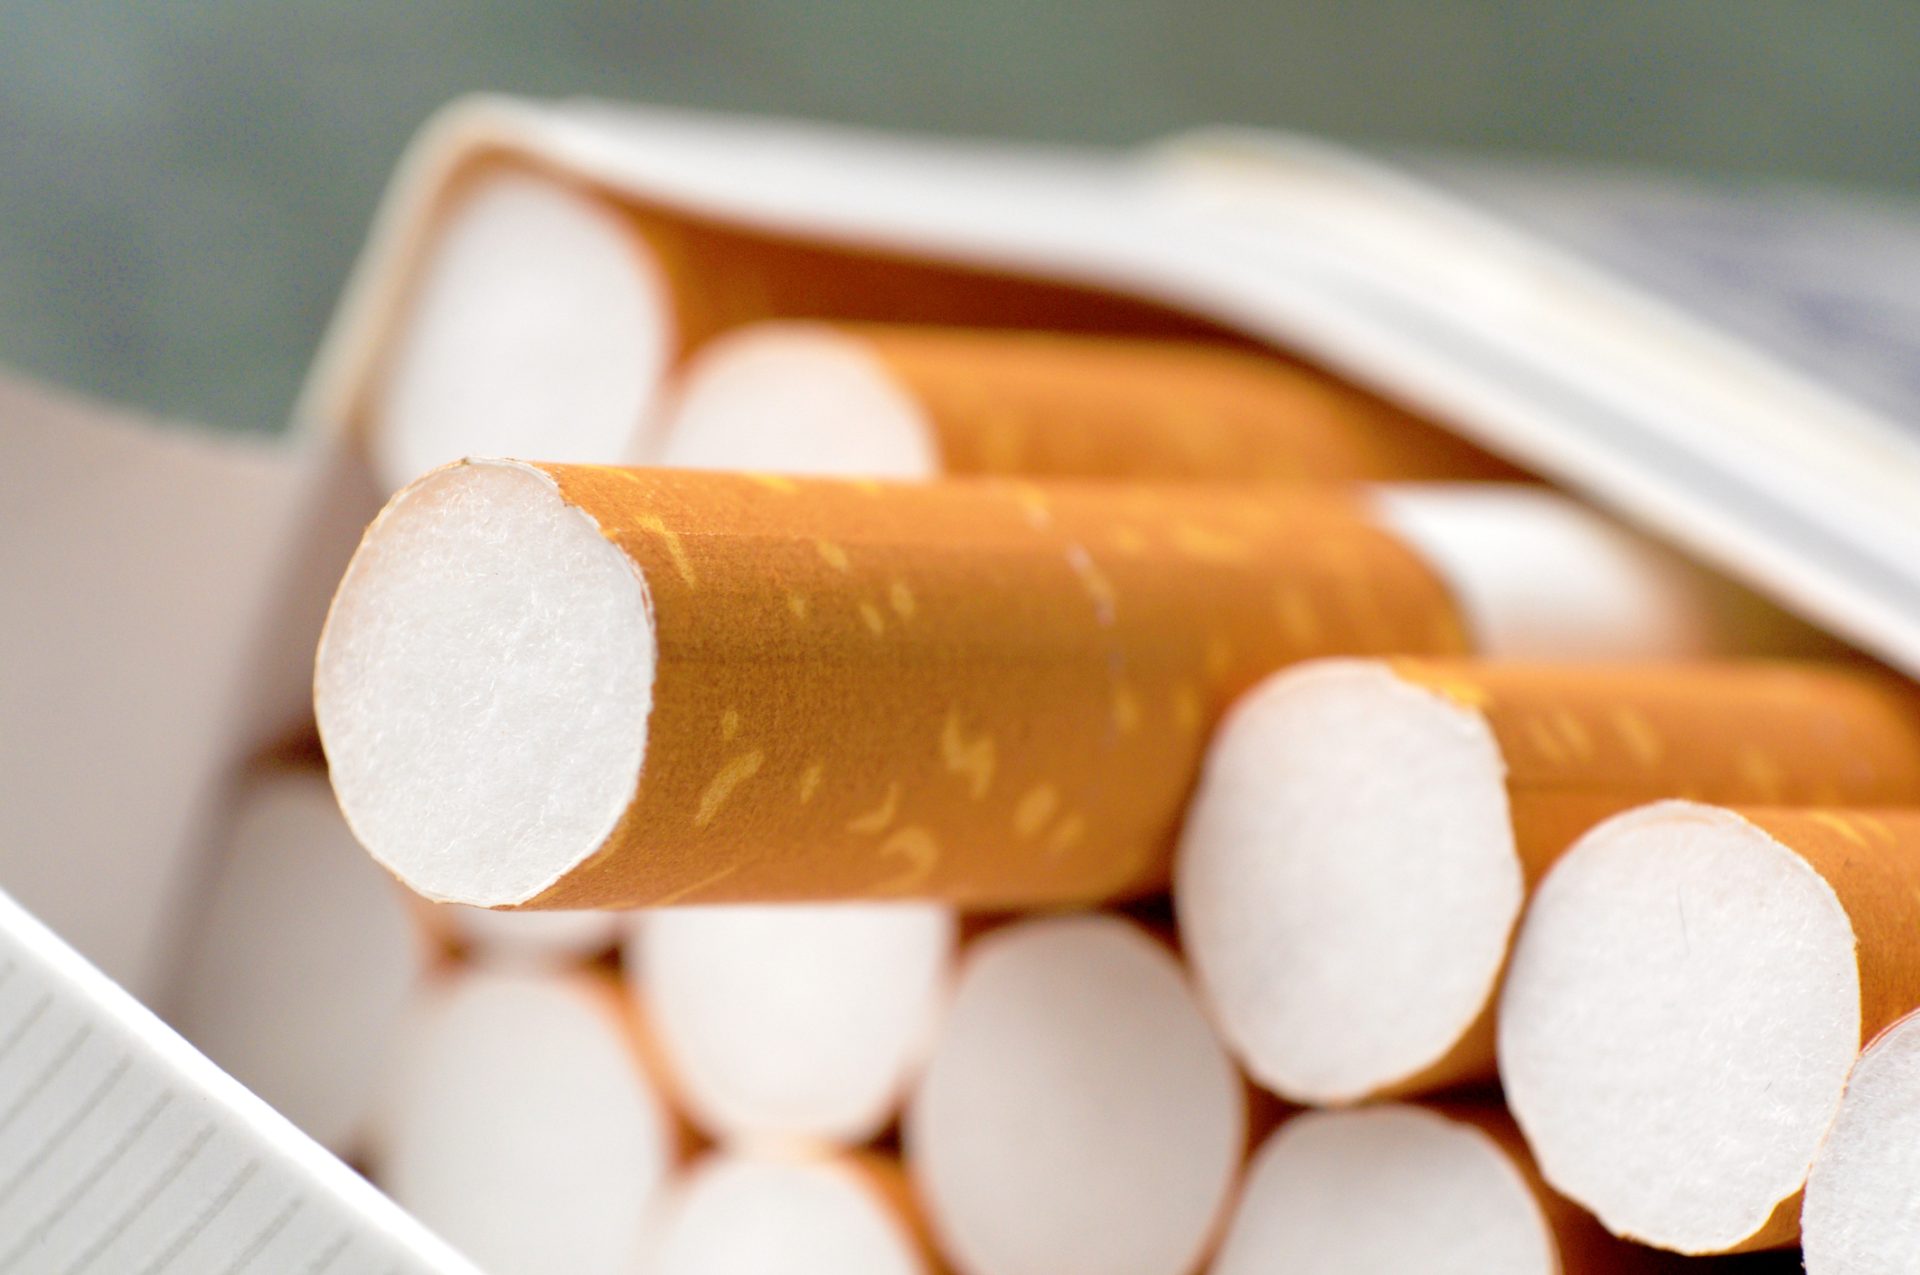 GNR apreende mais de 70 mil cigarros em Vila Verde de Ficalho